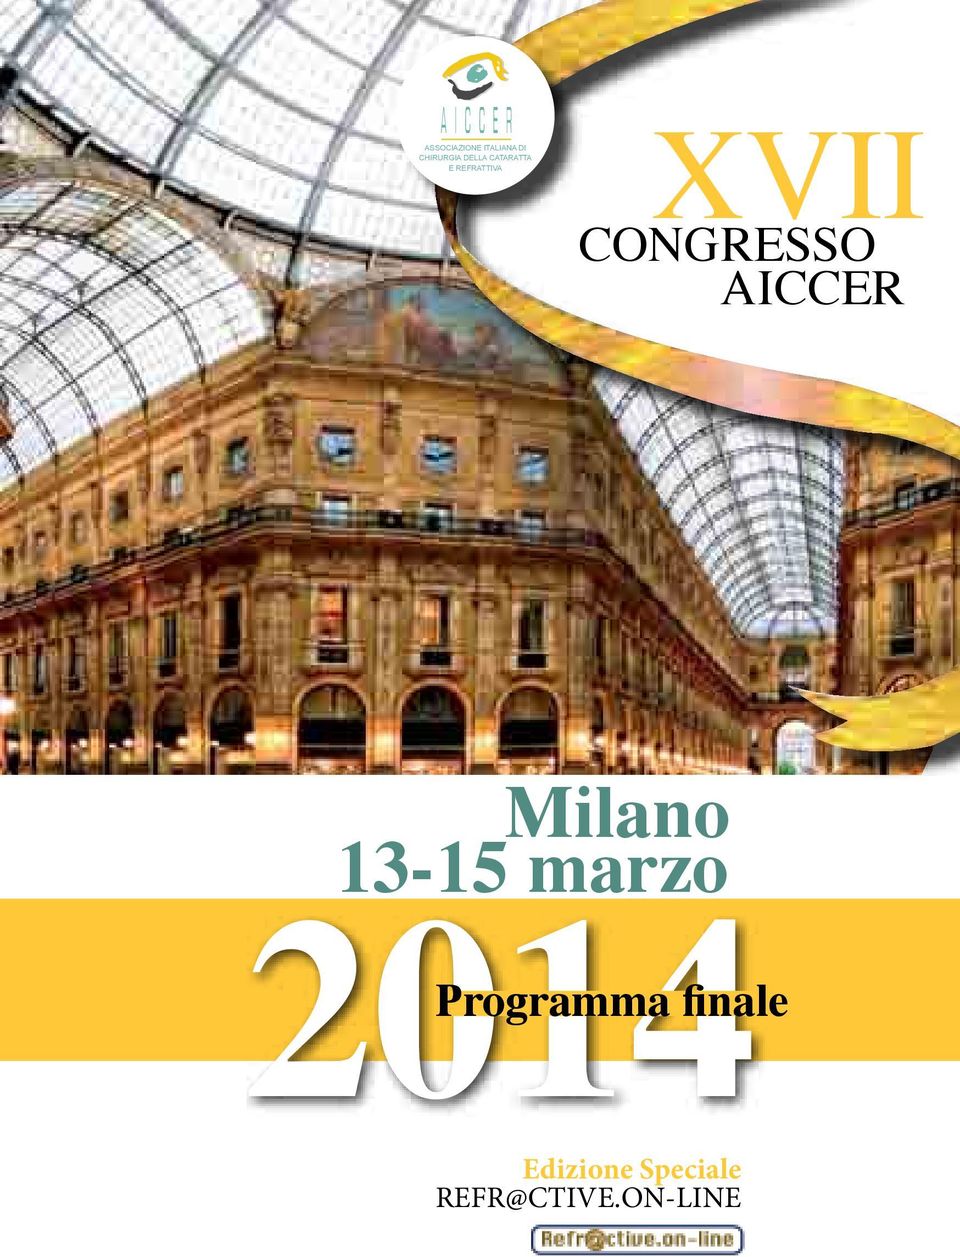 AICCER Milano 2014 Milano 13-15 marzo 2014